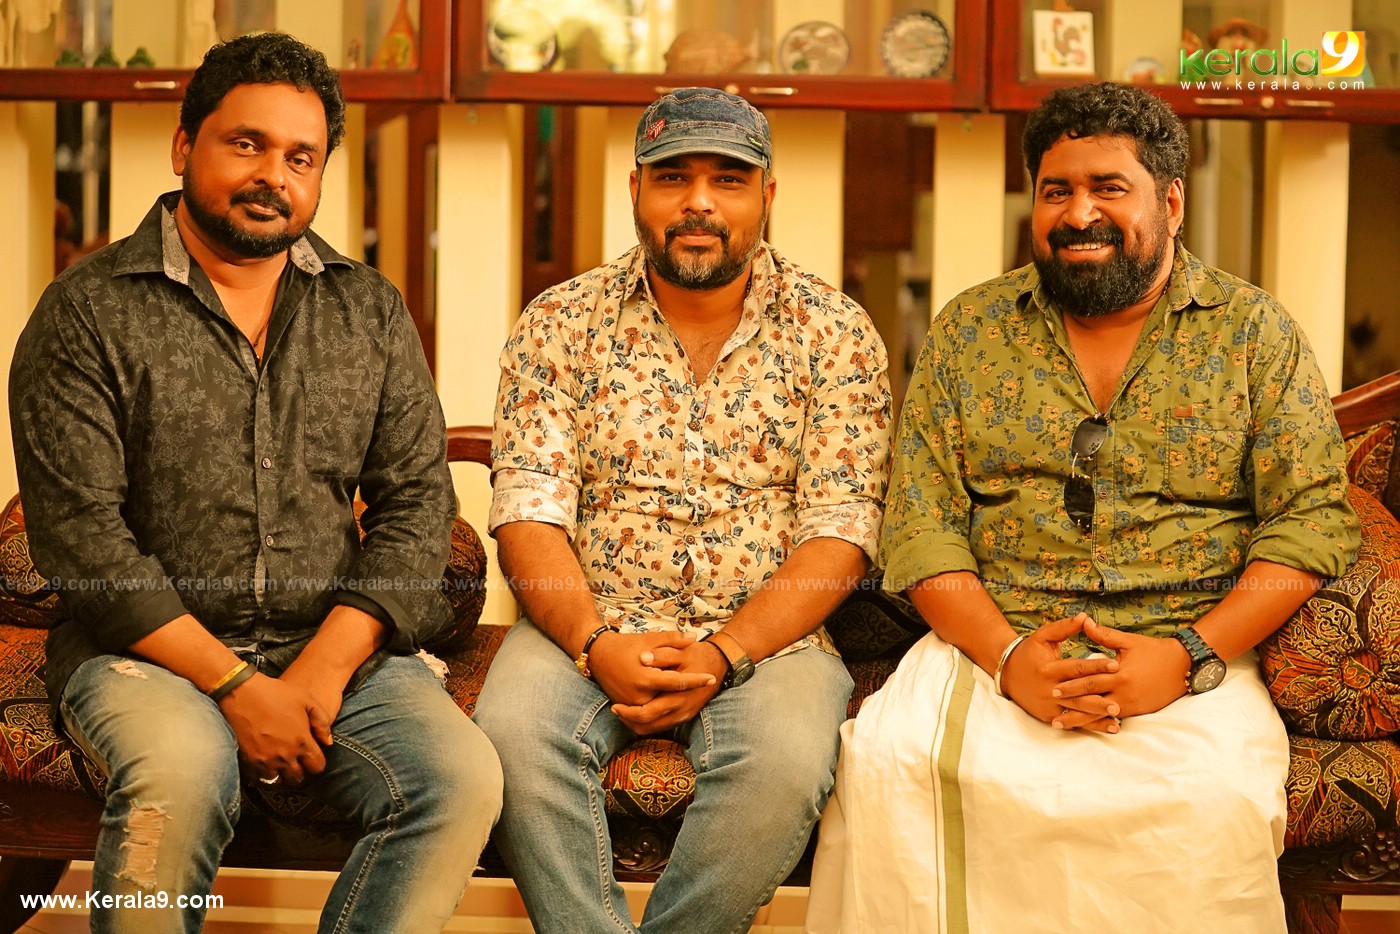 madura raja movie stills 19 - Kerala9.com